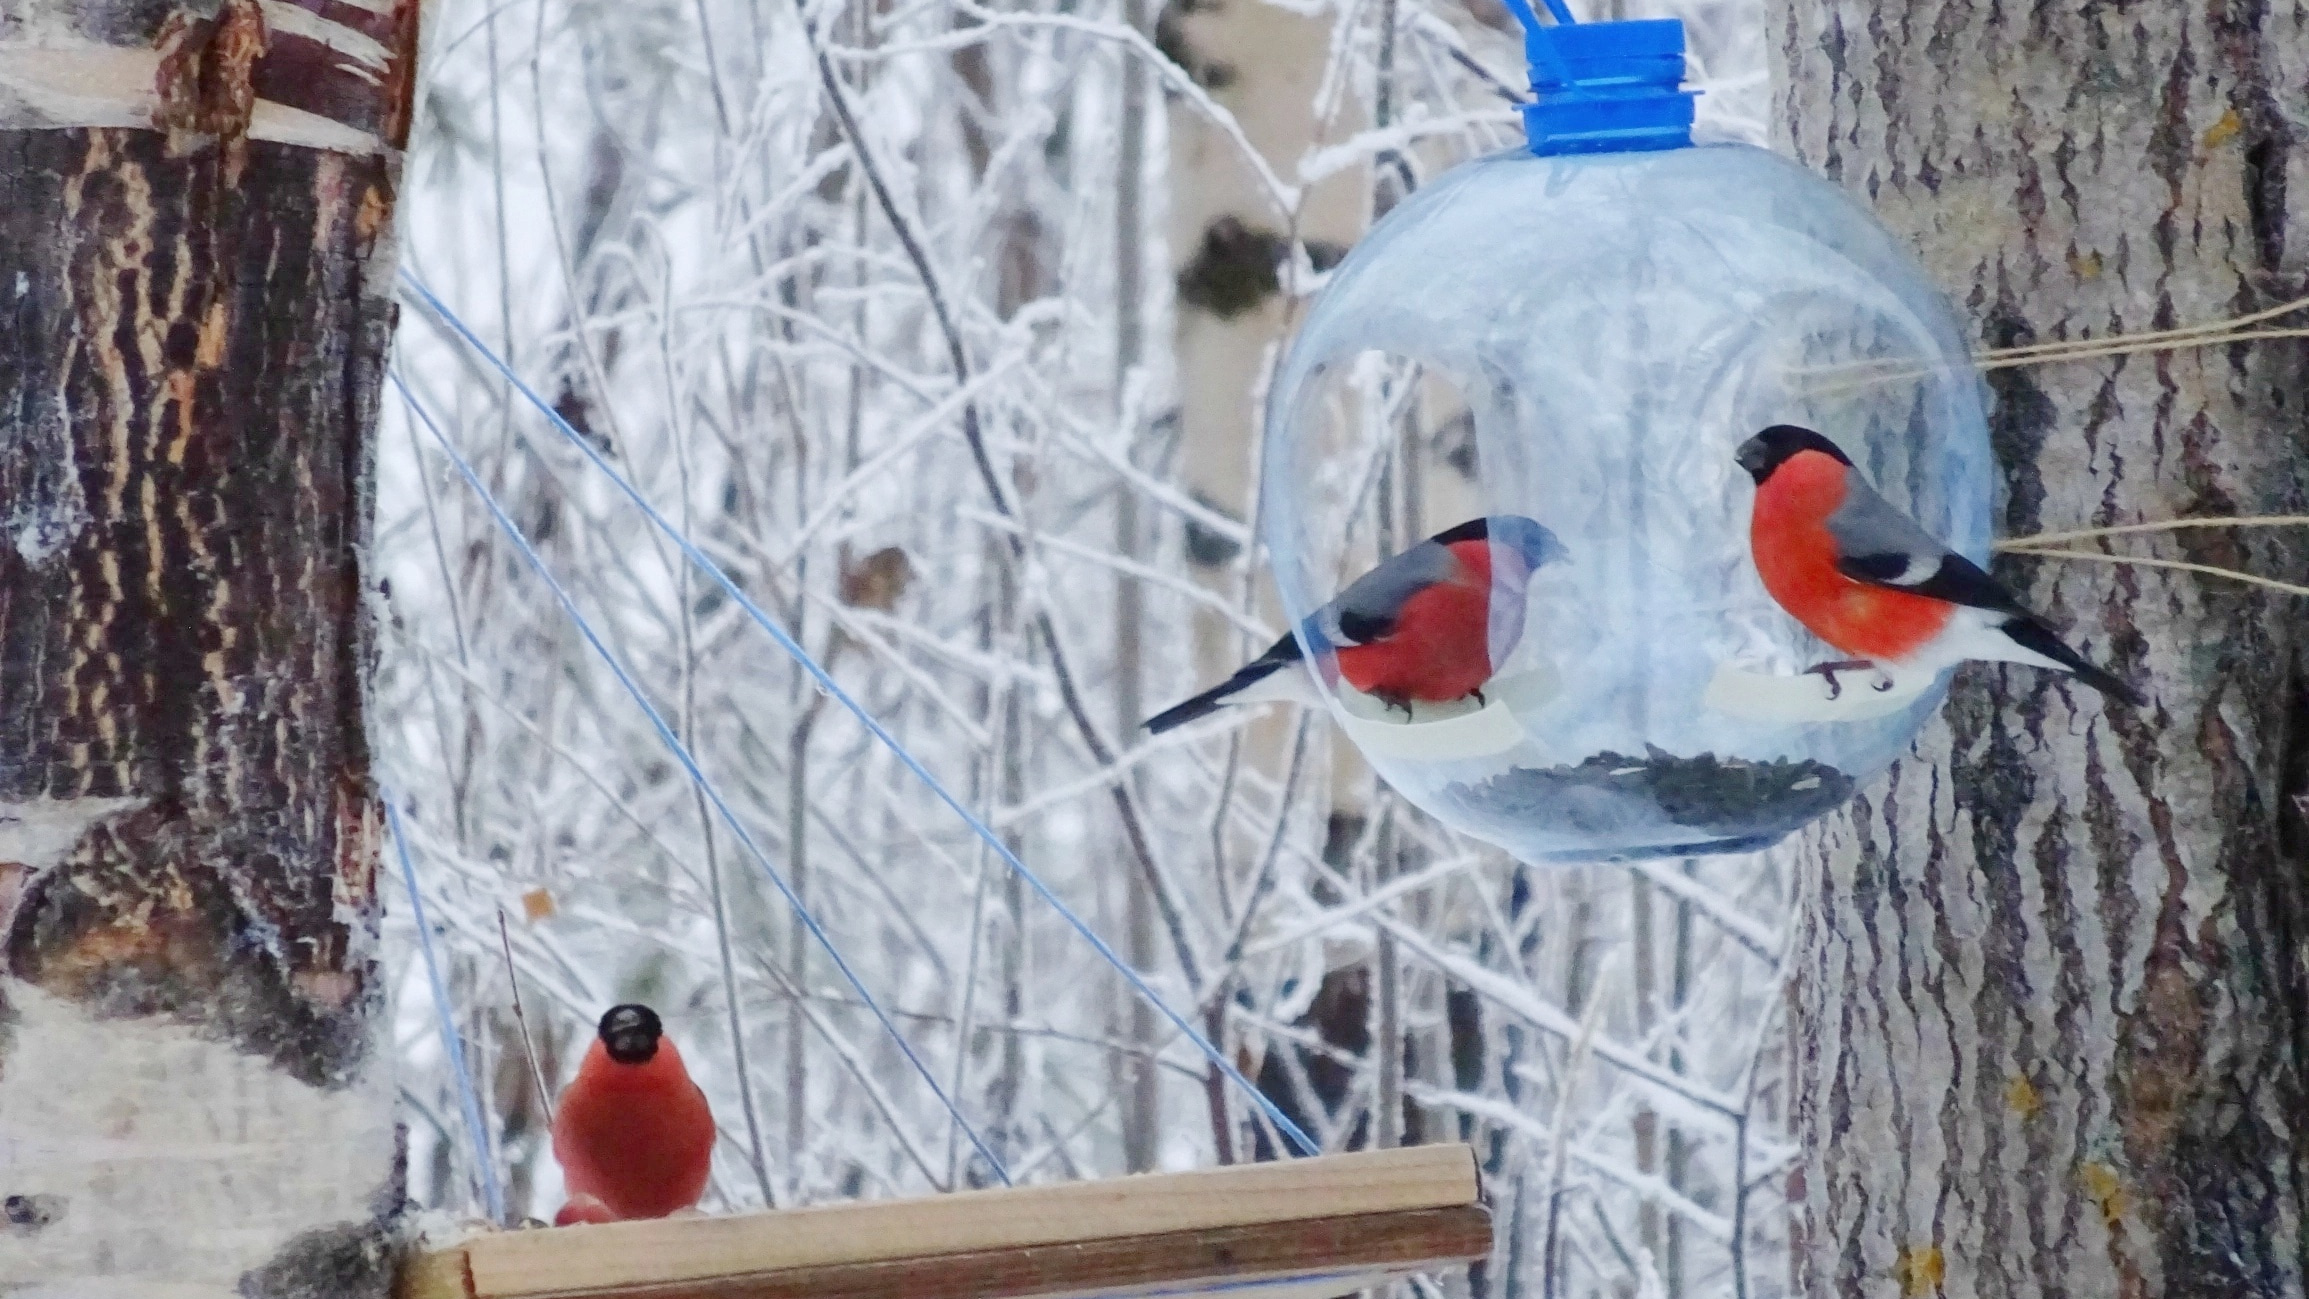 Снегири — герои, погляди: северянка близко засняла красногрудых птиц, смотрим фото